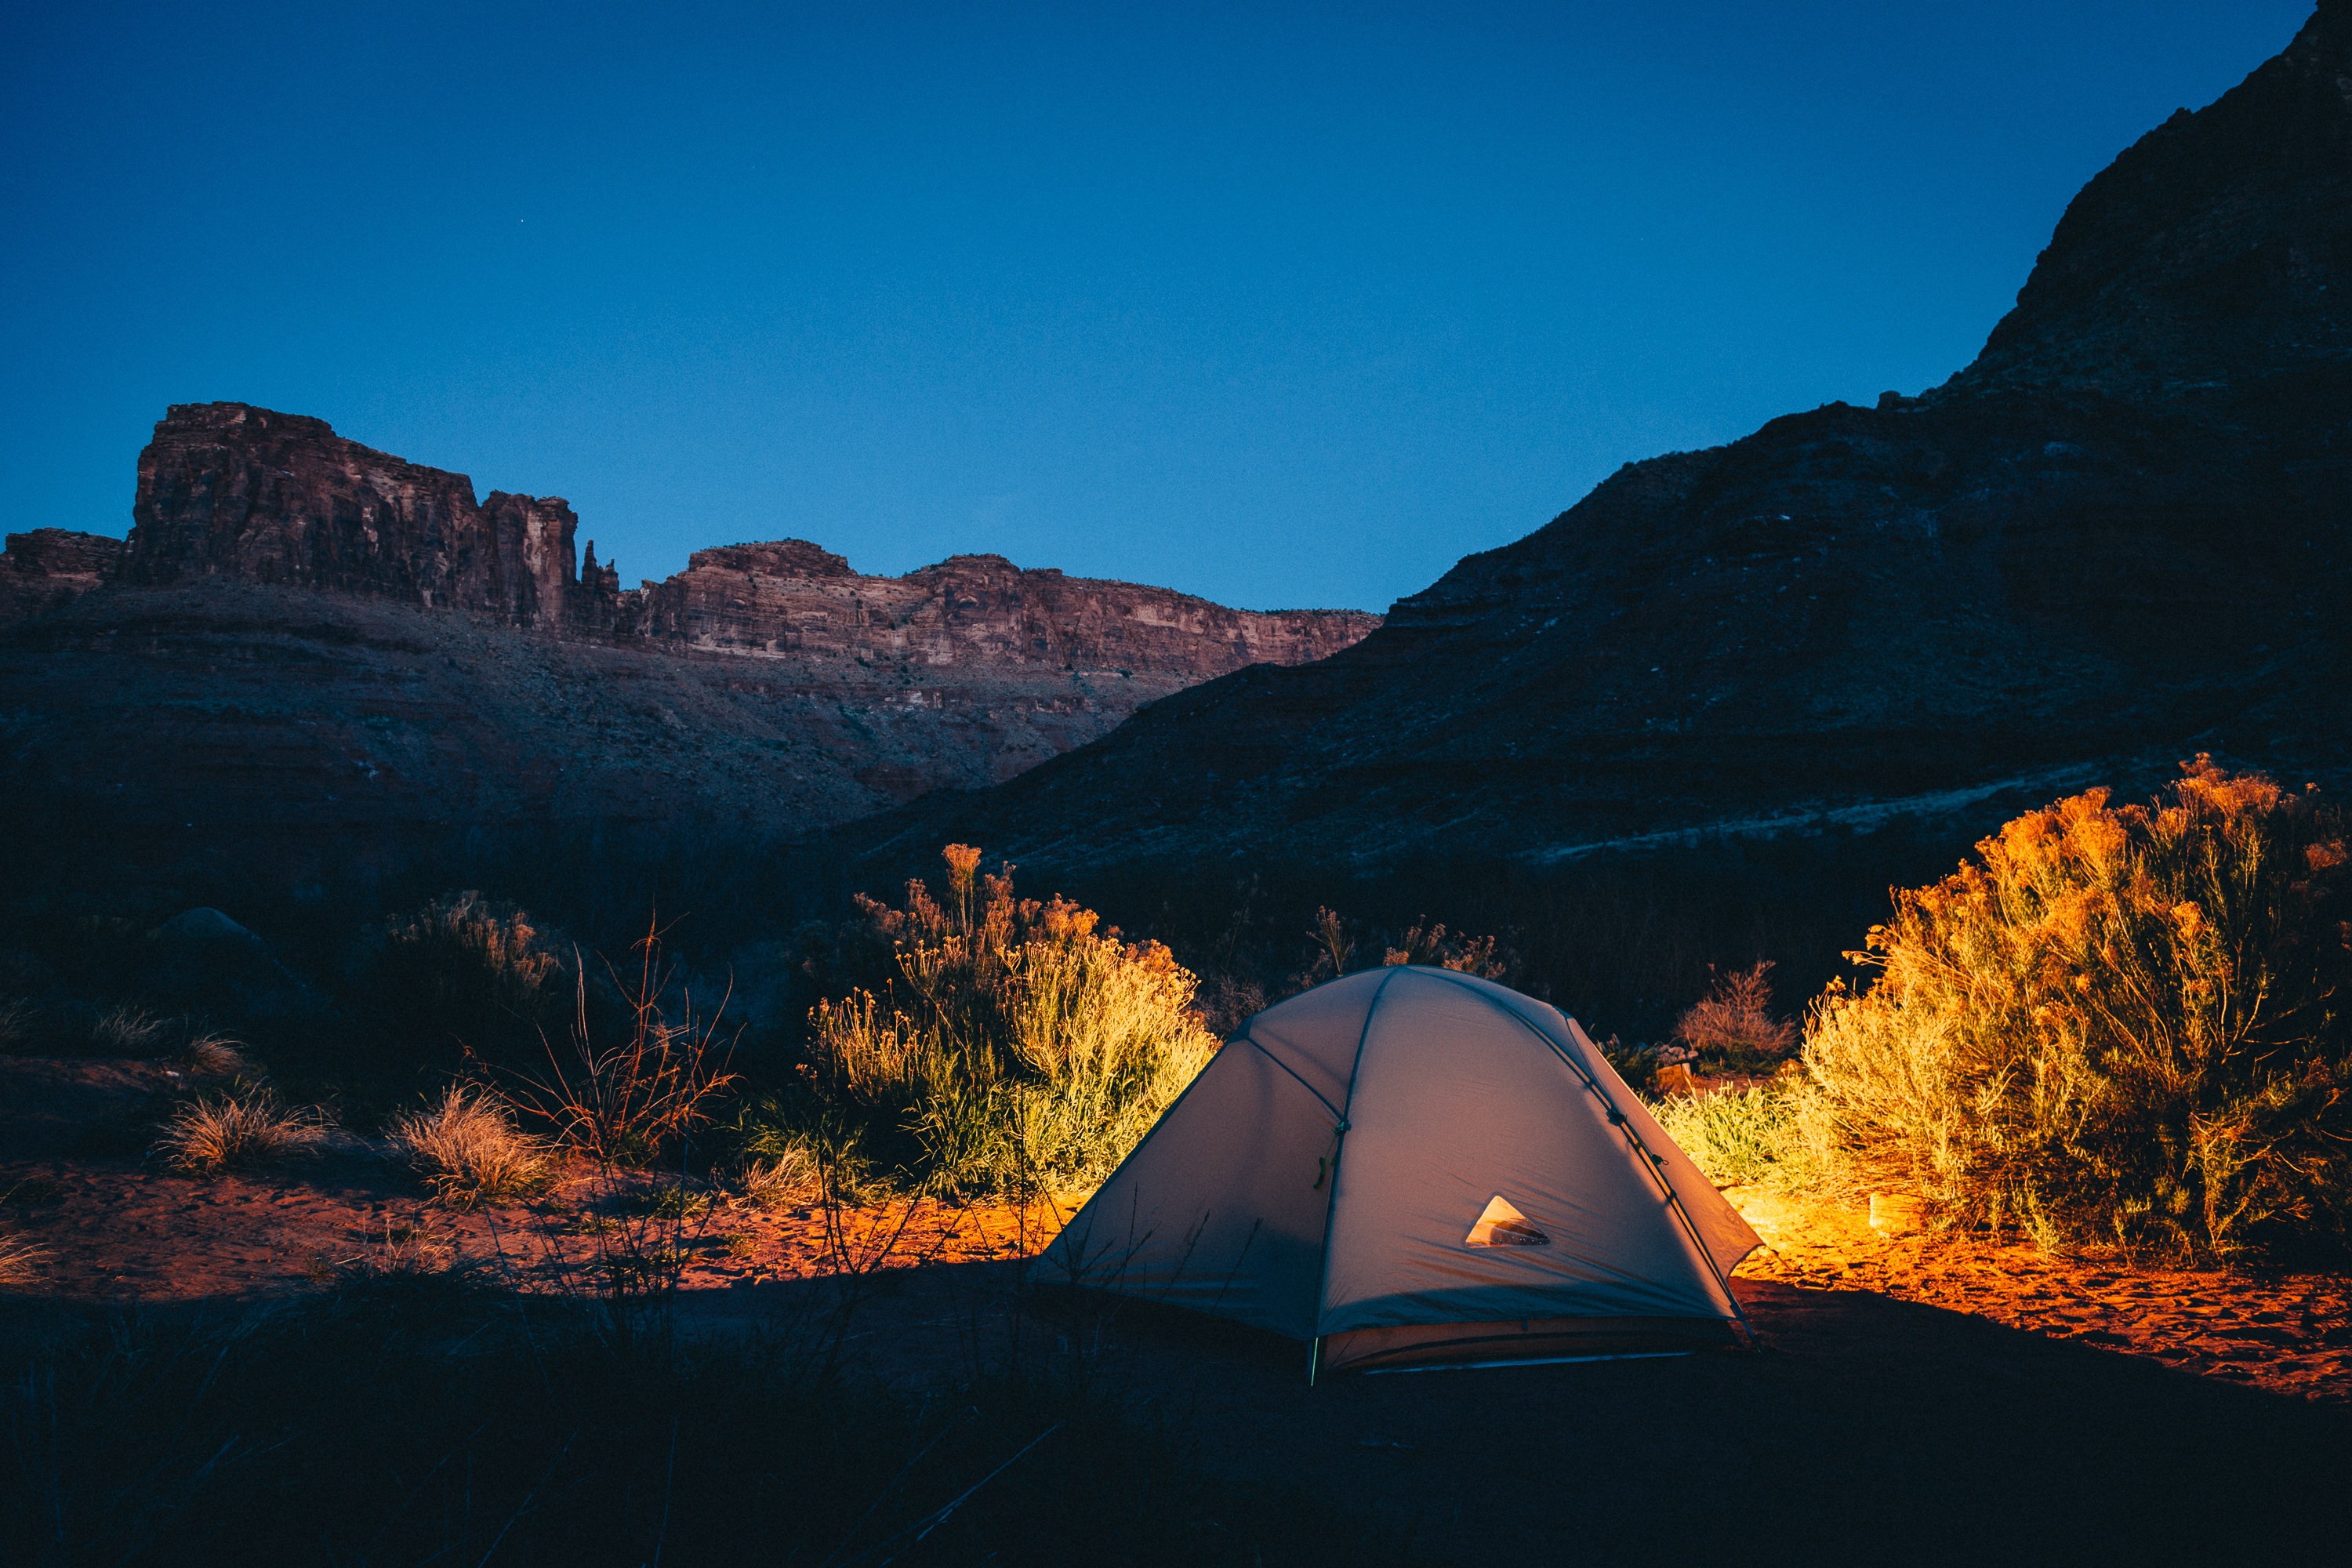 免费照片峡谷中央的露营帐篷。